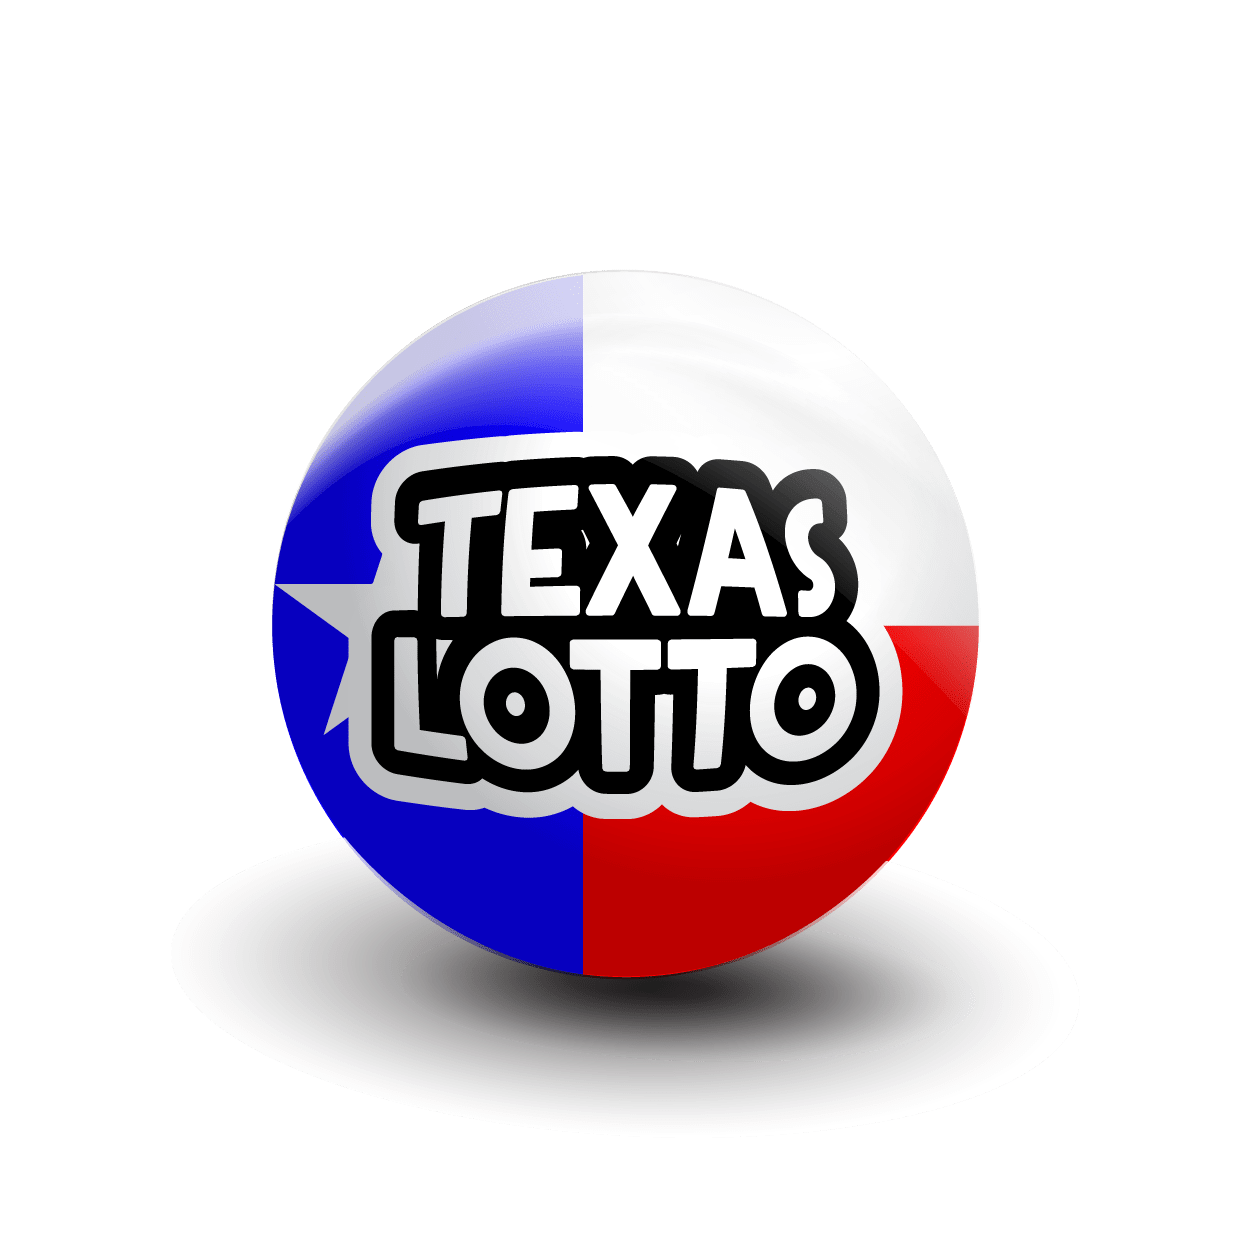 Texas lotto